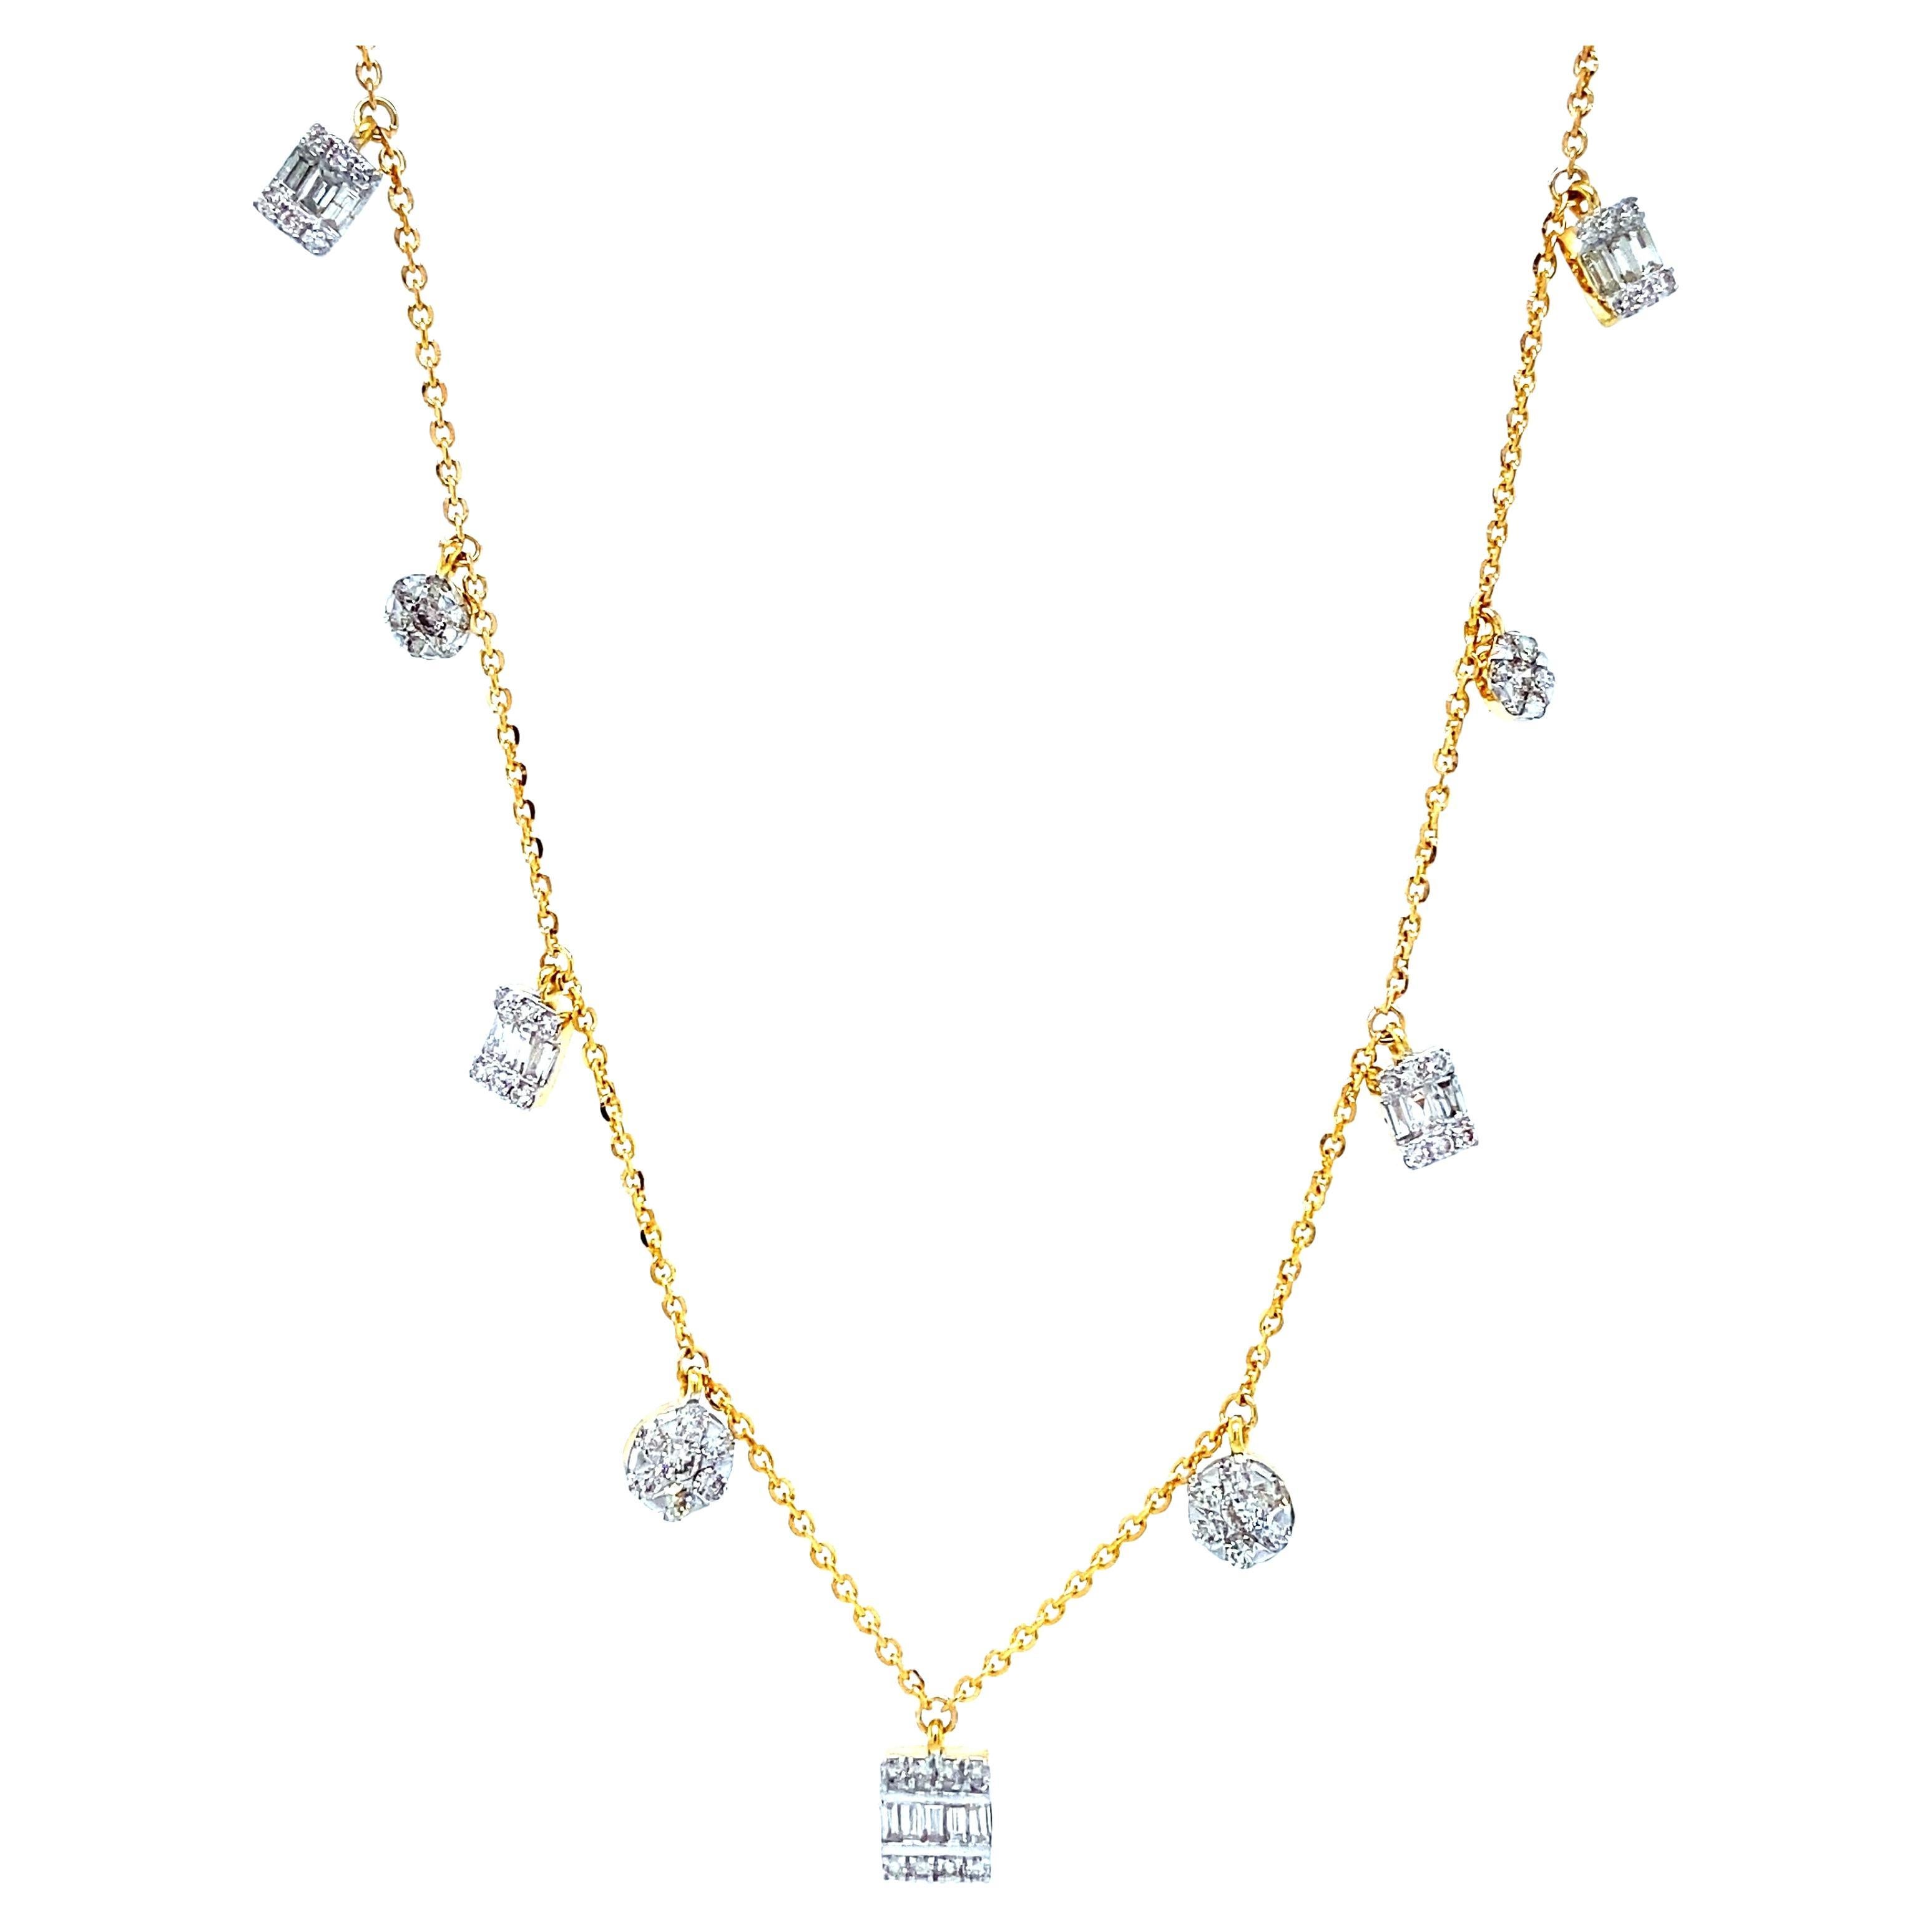 Collier en or massif 18k avec charms en diamants baguettes et ronds